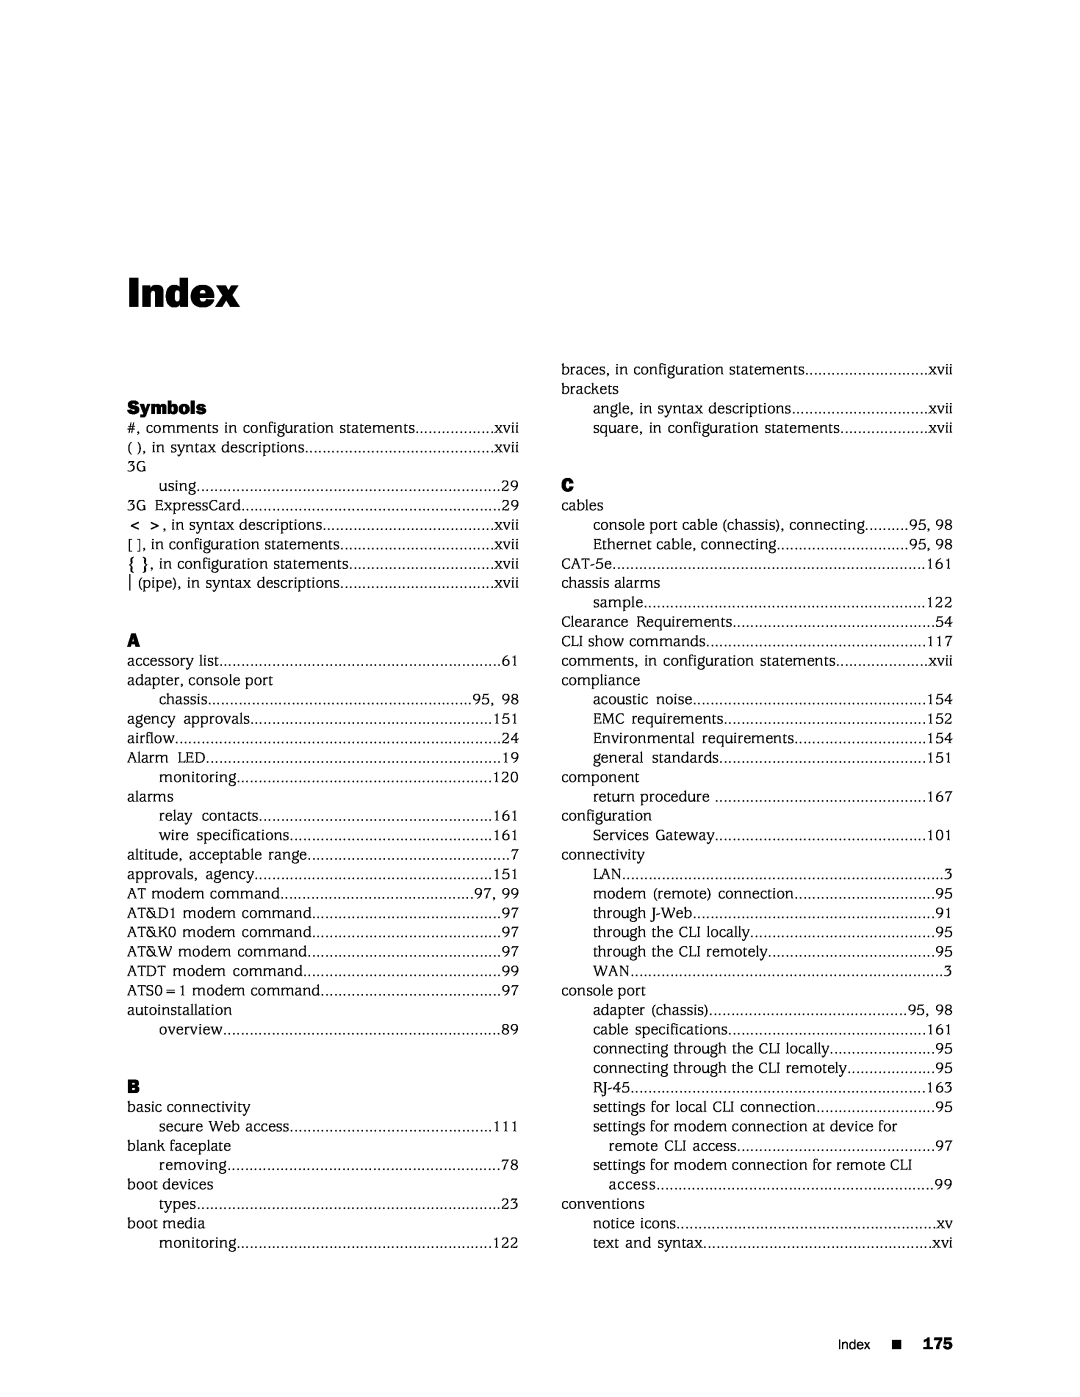 Juniper Networks SRX 210 manual Symbols, Index, AT modem command 